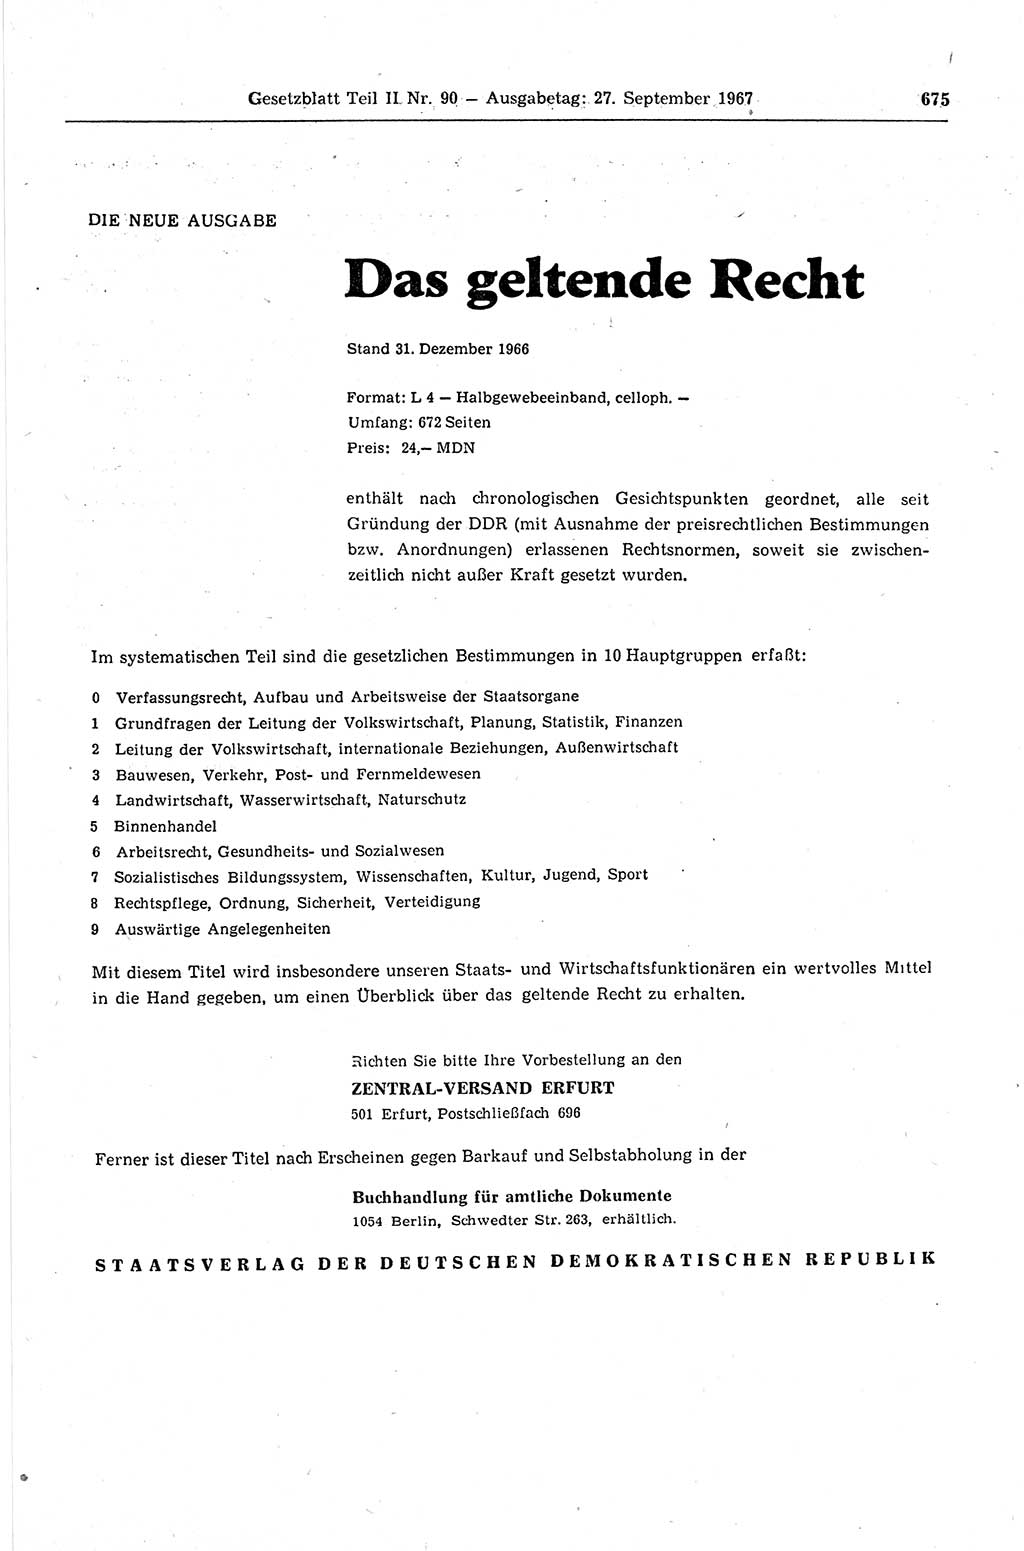 Gesetzblatt (GBl.) der Deutschen Demokratischen Republik (DDR) Teil ⅠⅠ 1967, Seite 675 (GBl. DDR ⅠⅠ 1967, S. 675)